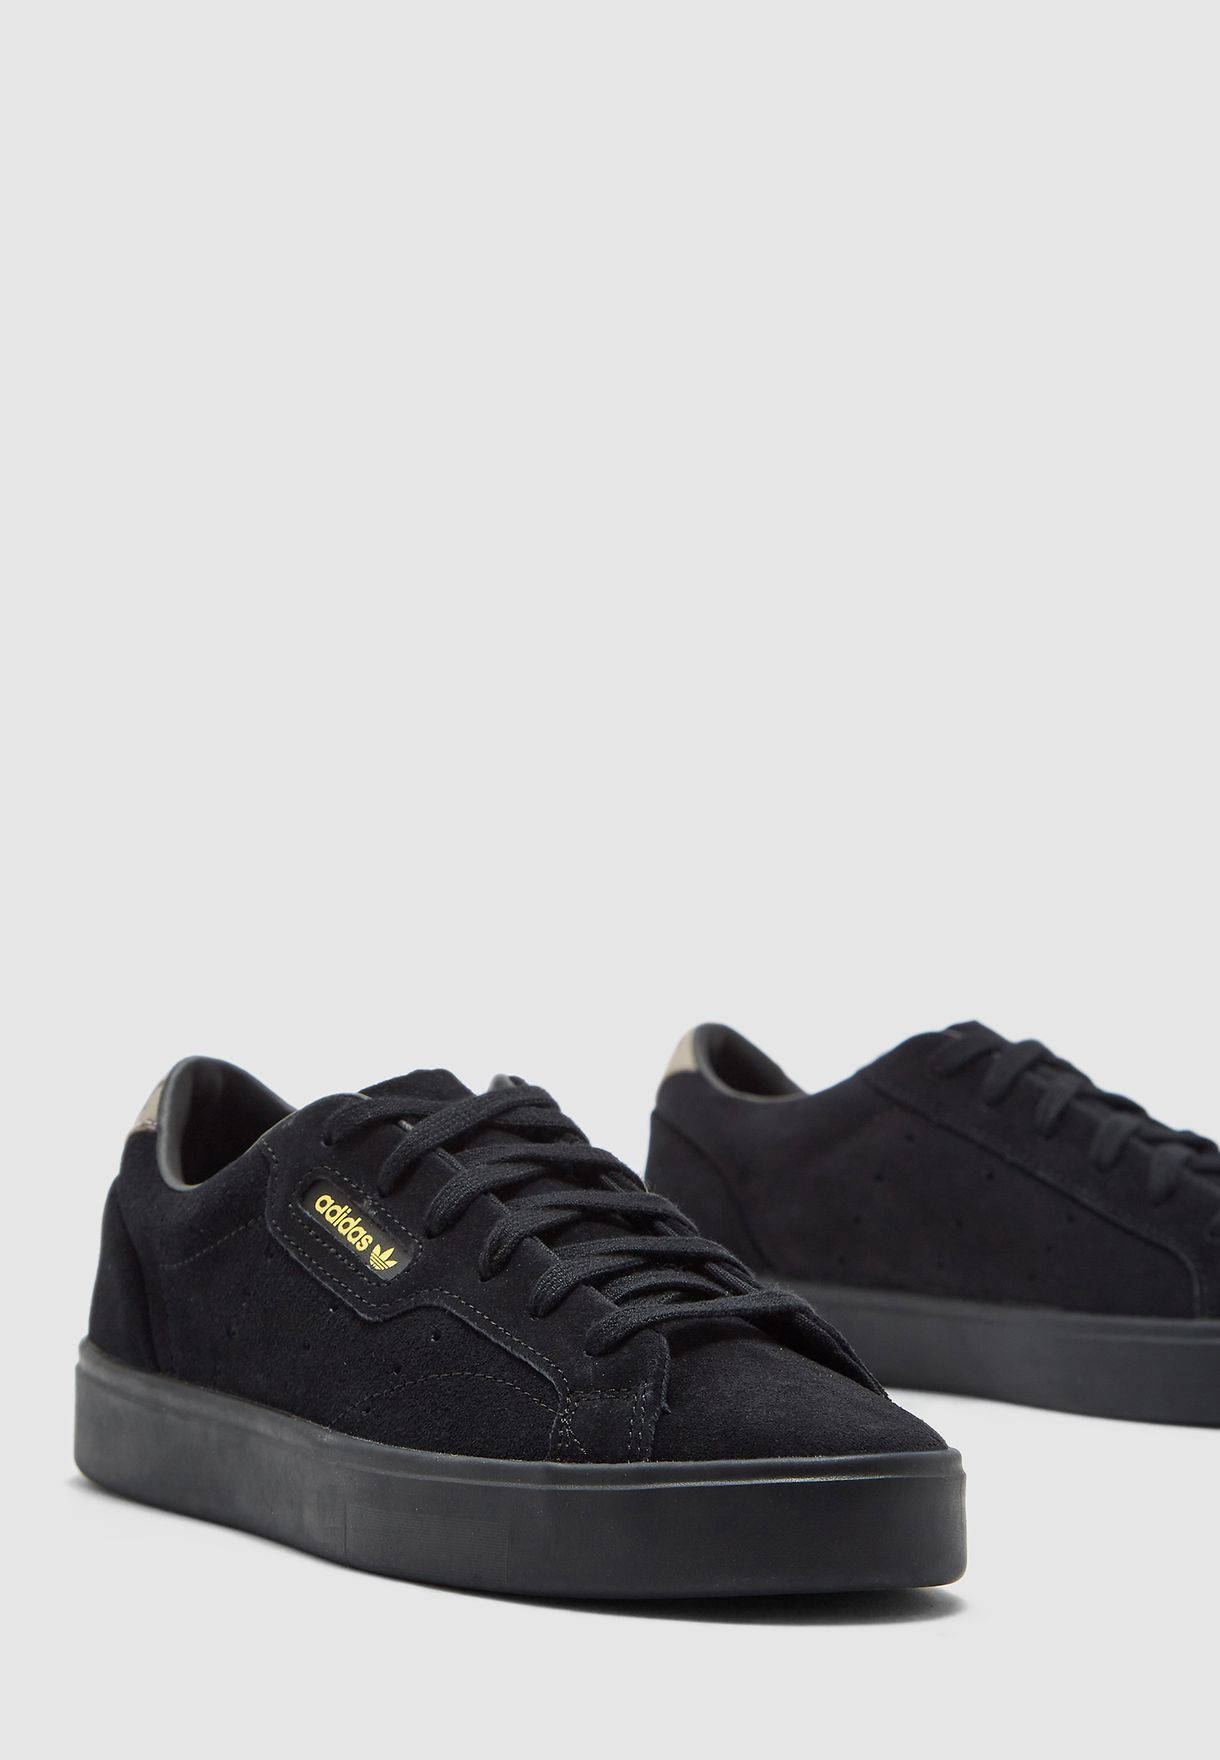 adidas black sleek trainers